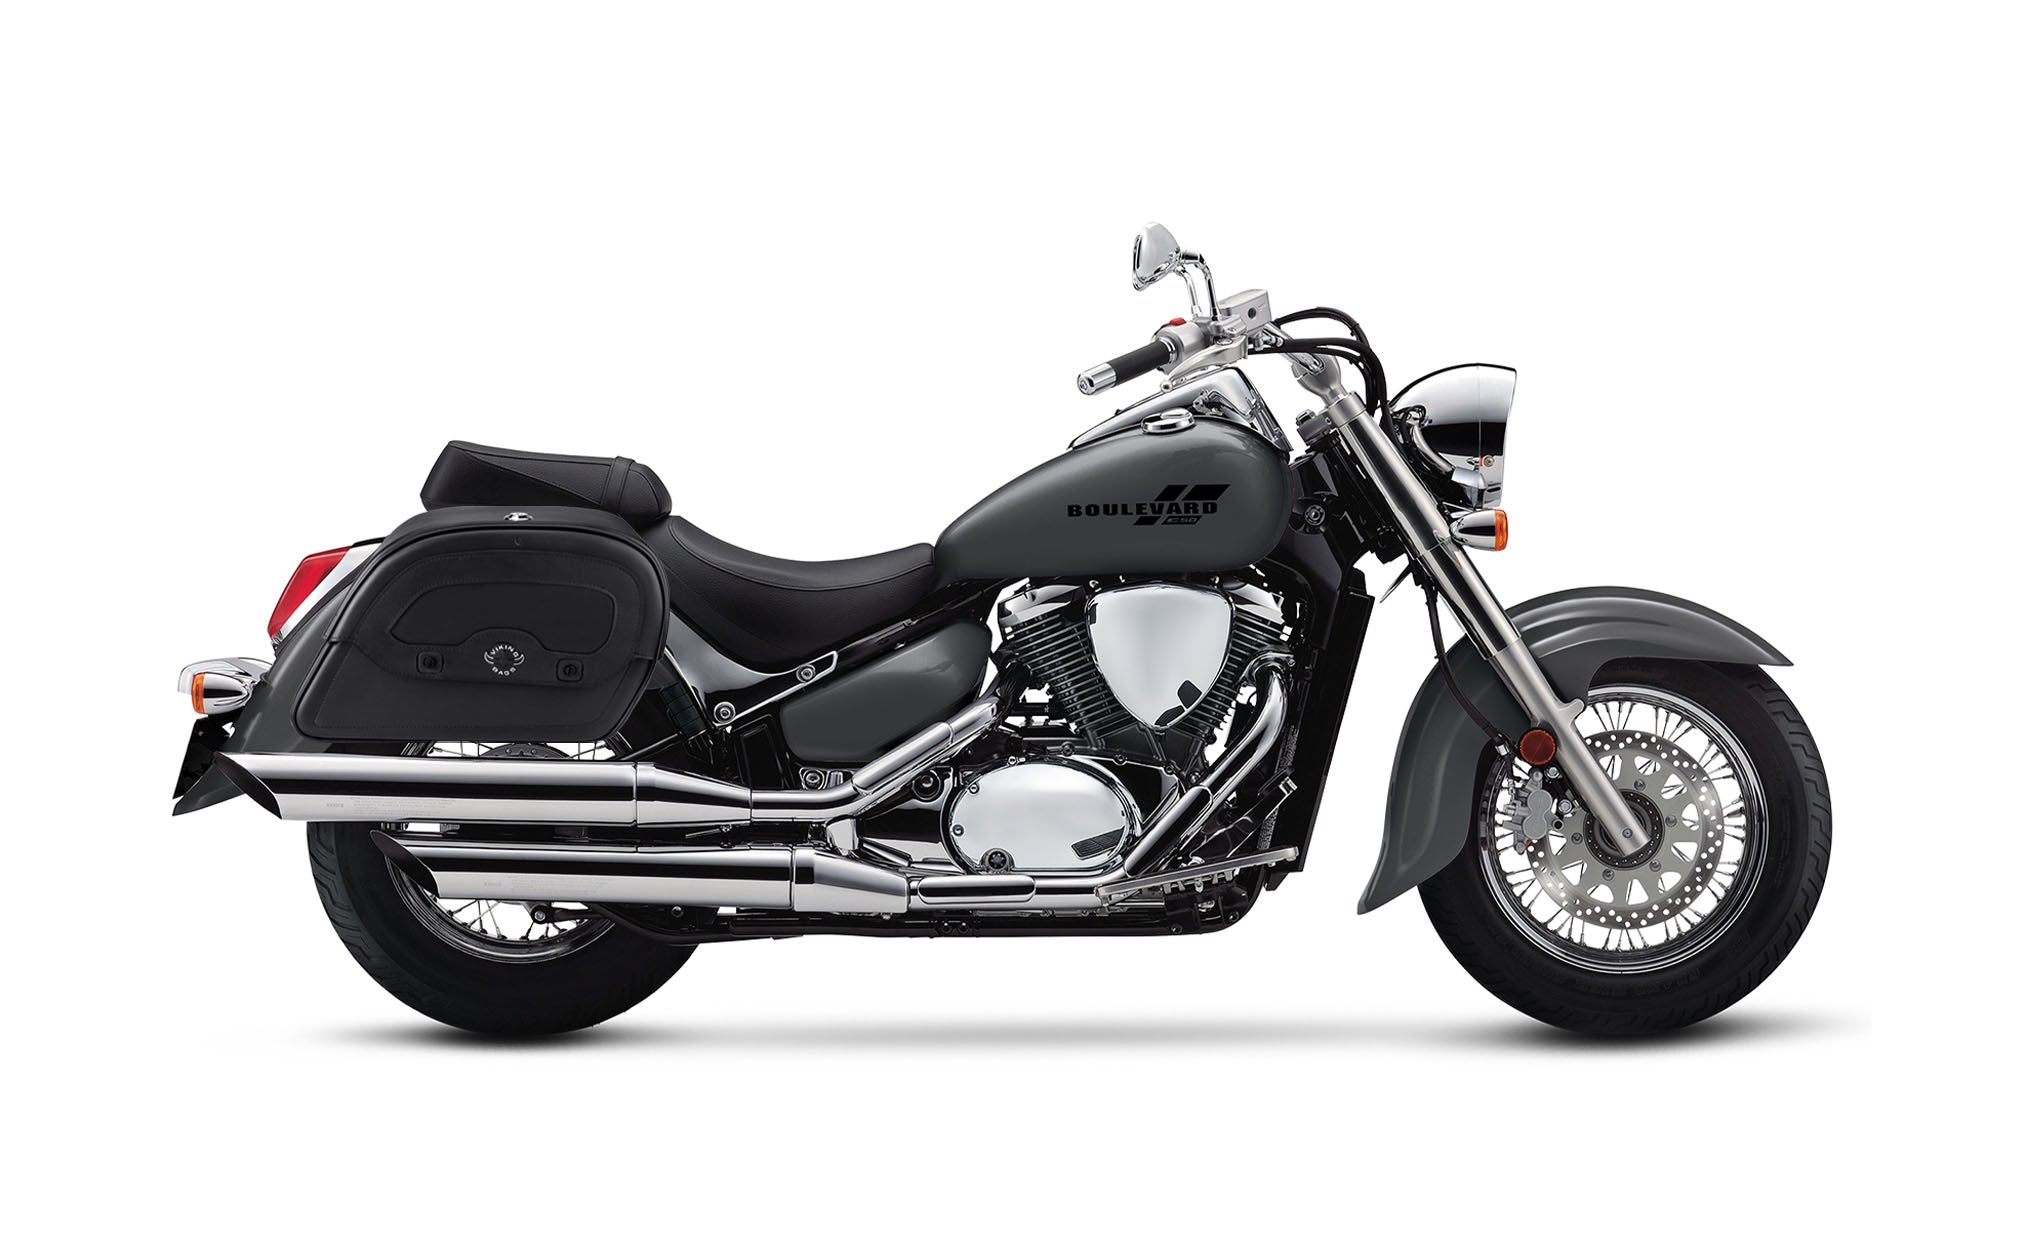 Viking Warrior Large Suzuki Boulevard C50 Vl800 Leather Motorcycle Saddlebags on Bike Photo @expand